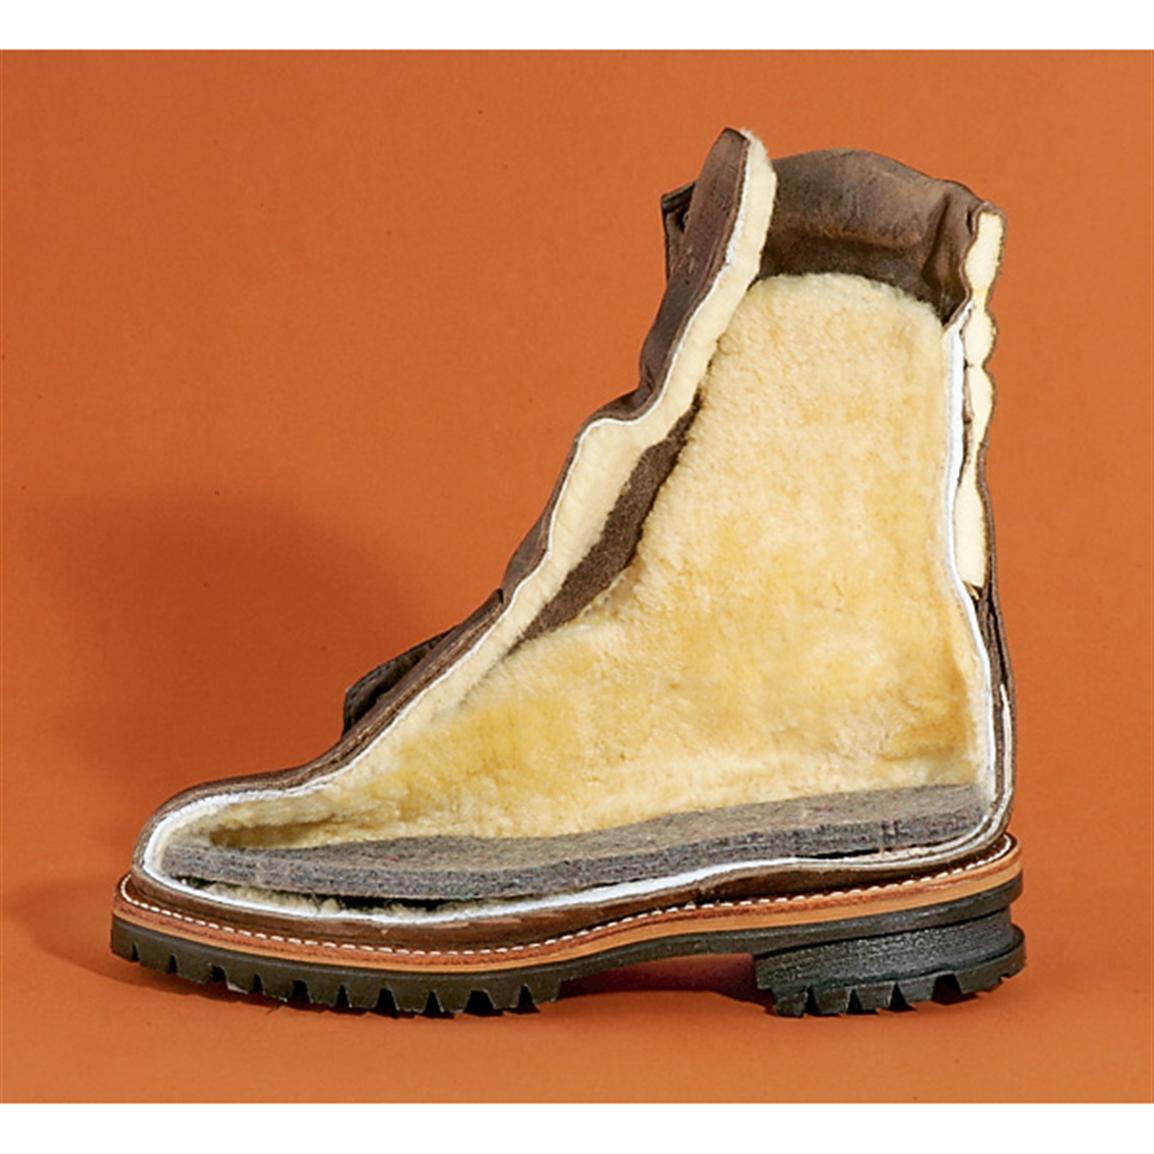 chippewa boots arctic 50